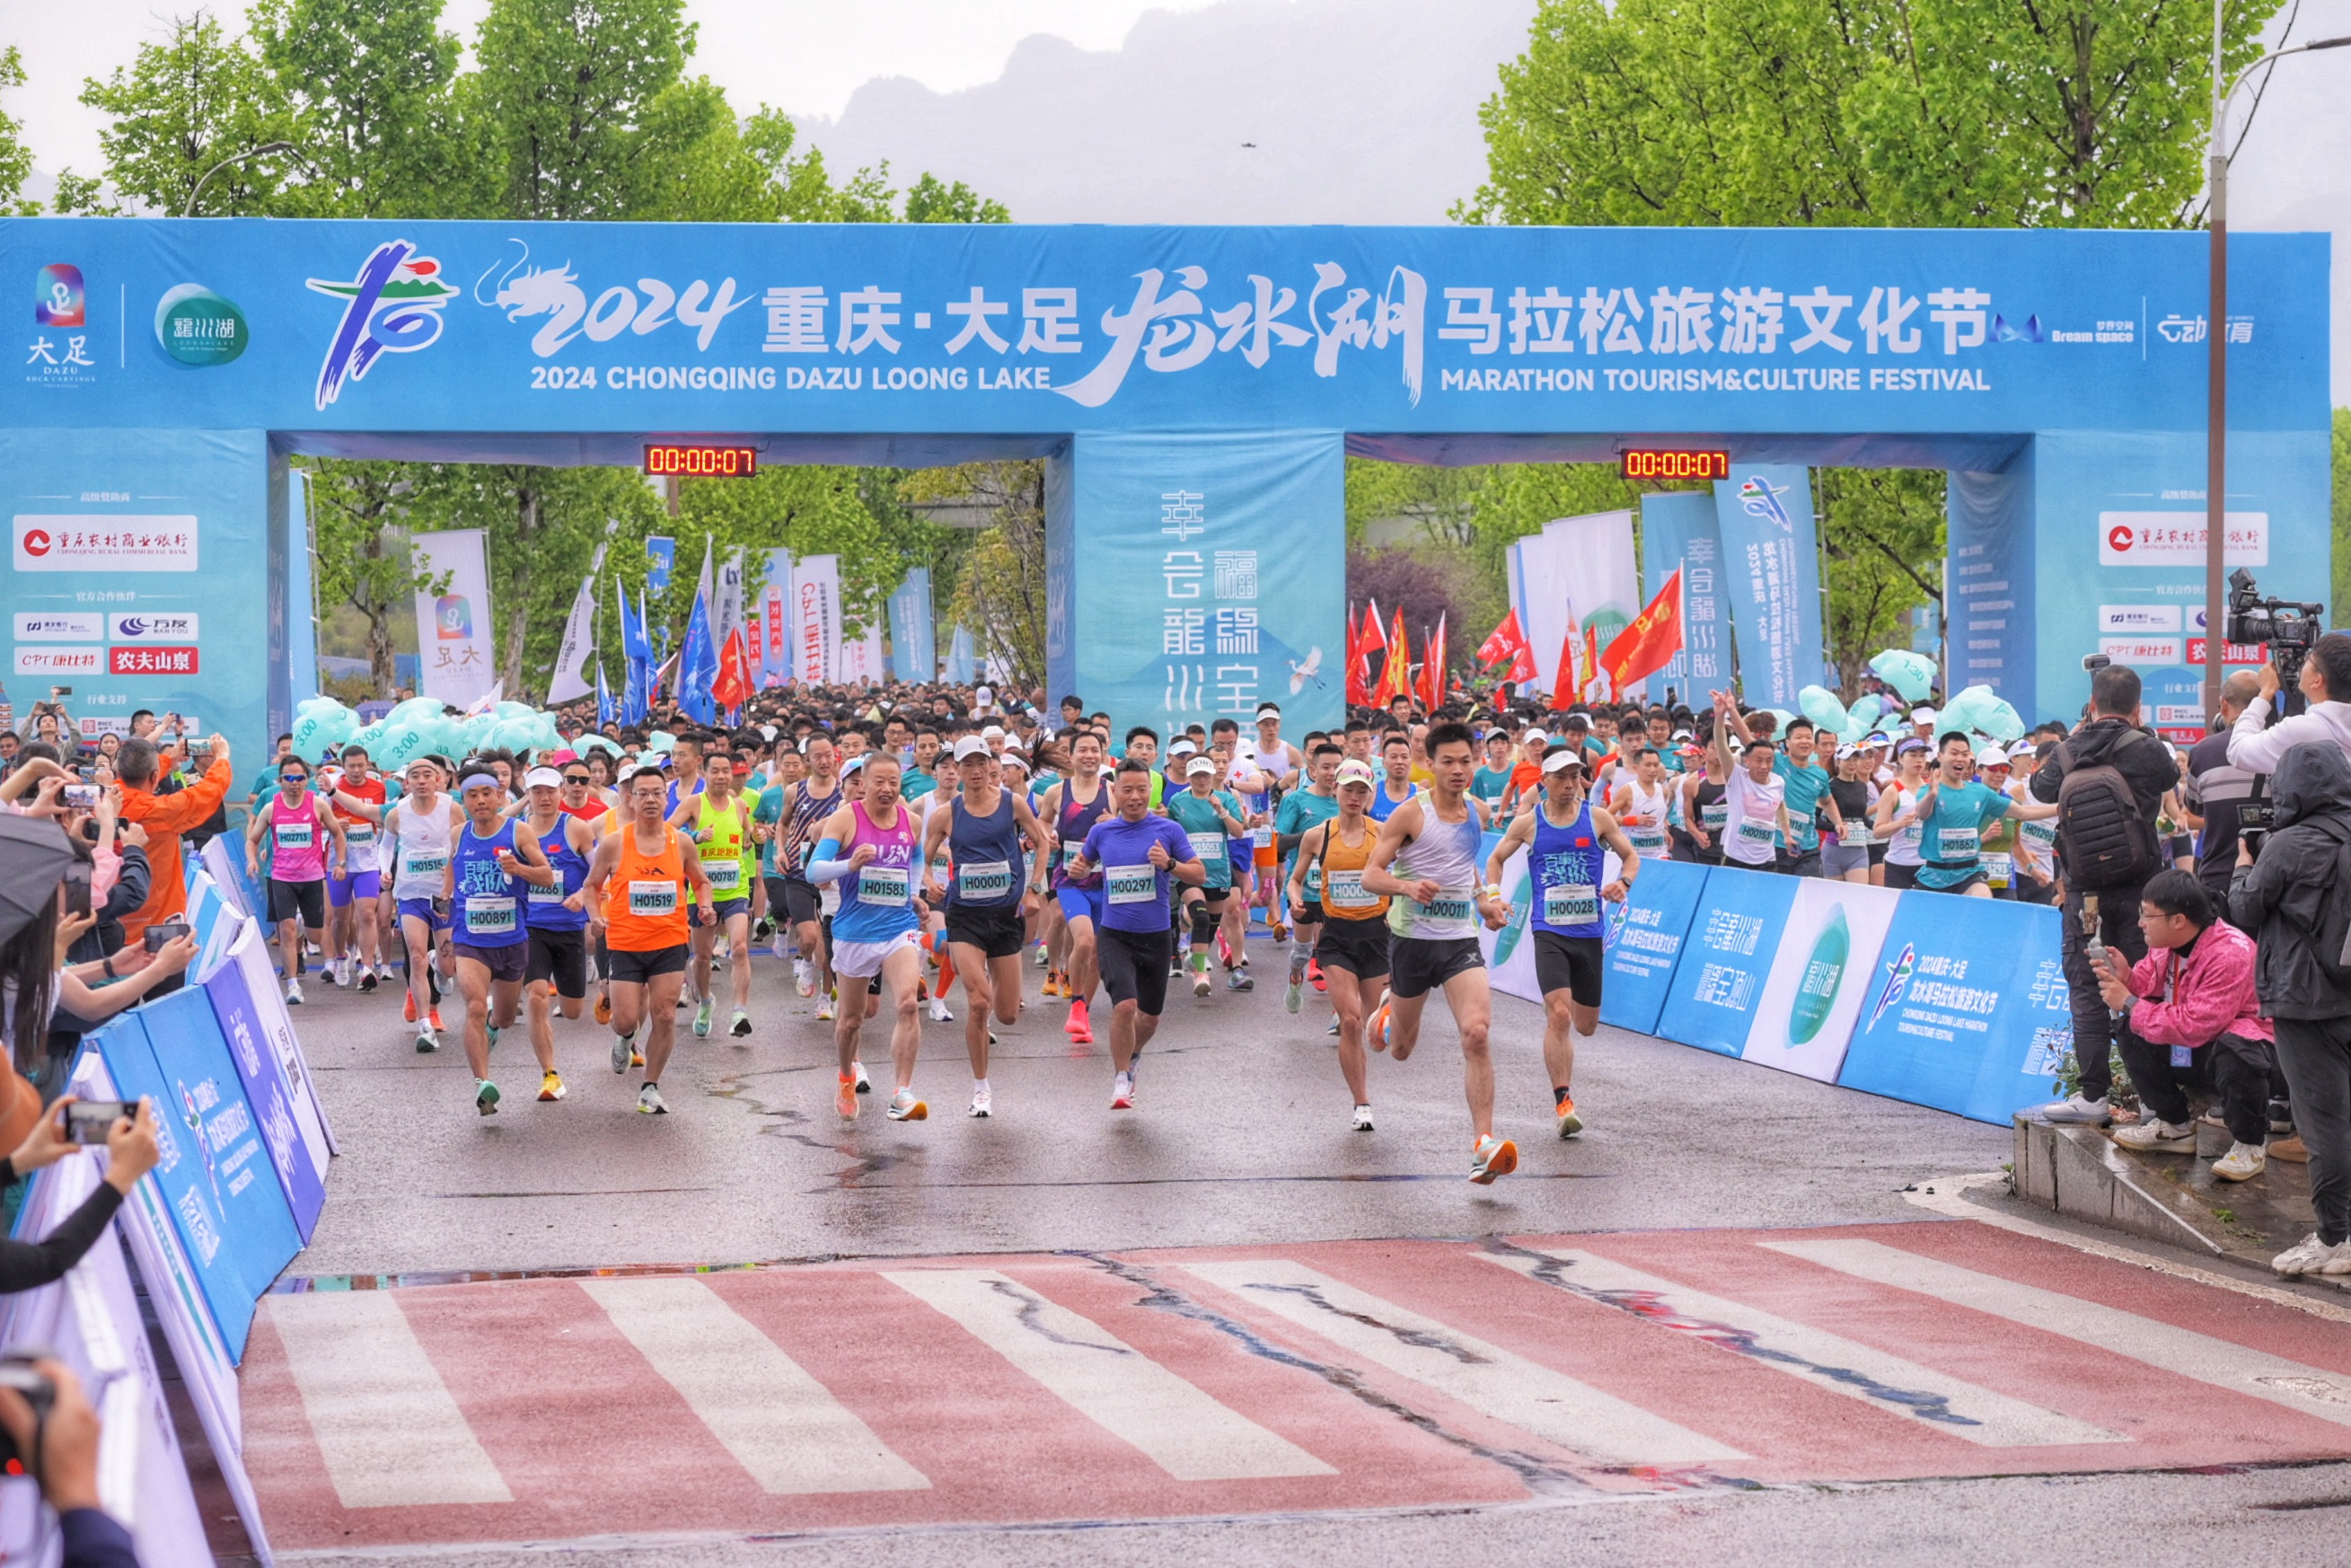 马拉松最美环湖赛道  迎来2024重庆·大足龙水湖马拉松旅游文化节开跑